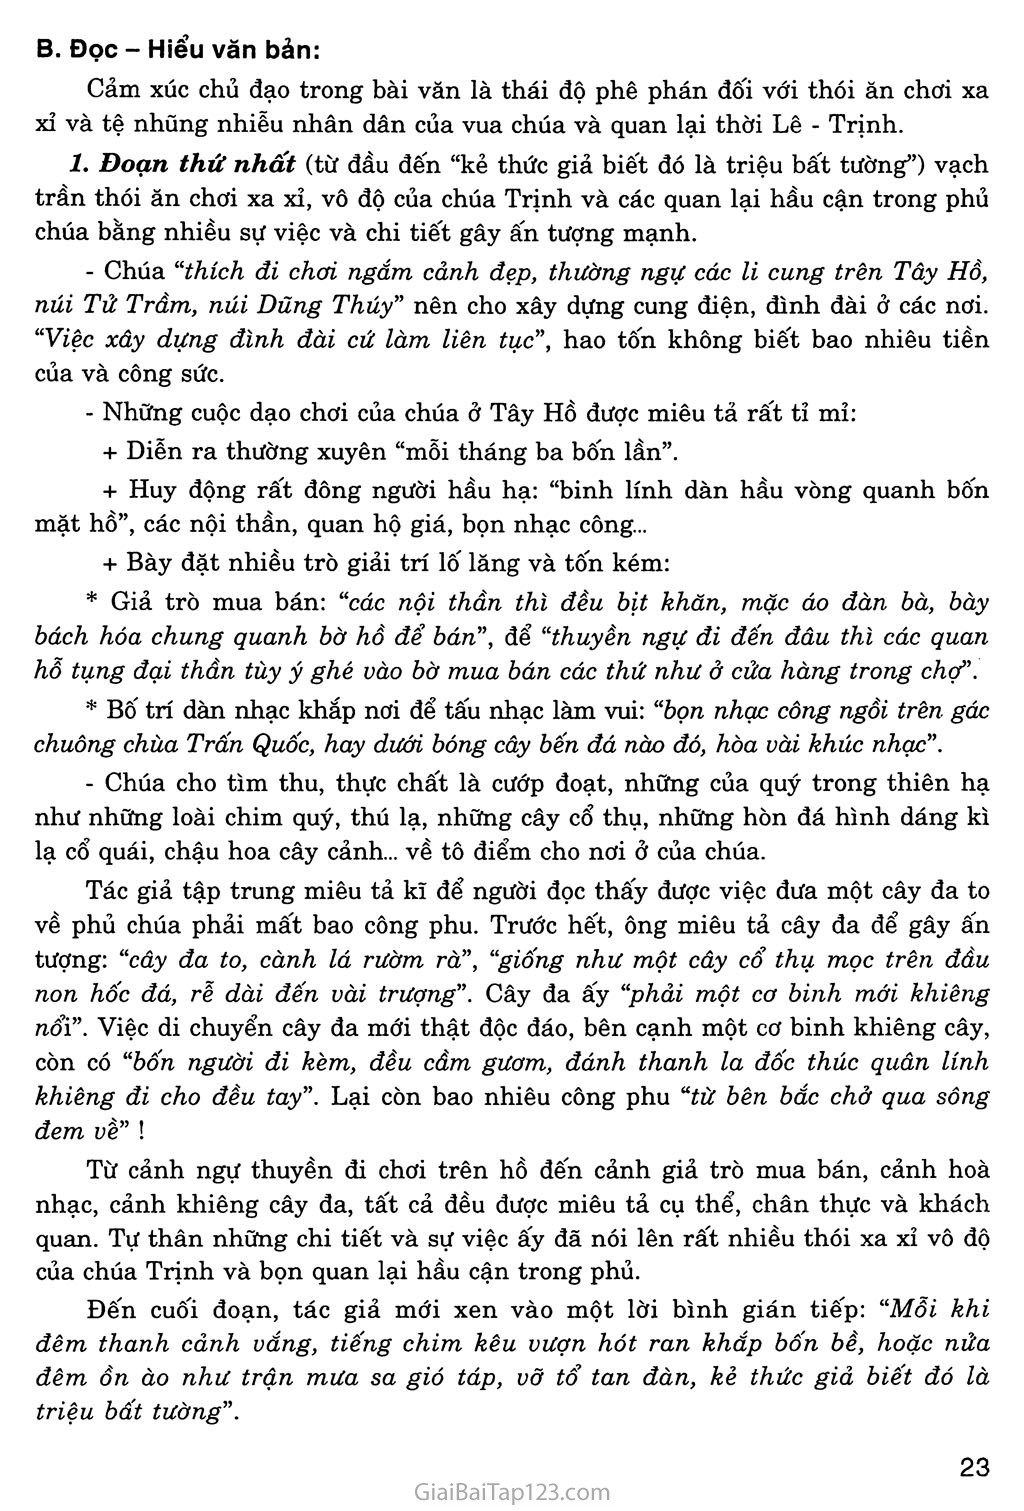 Chuyện cũ trong phủ chúa Trịnh (trích Vũ trung tùy bút) trang 2